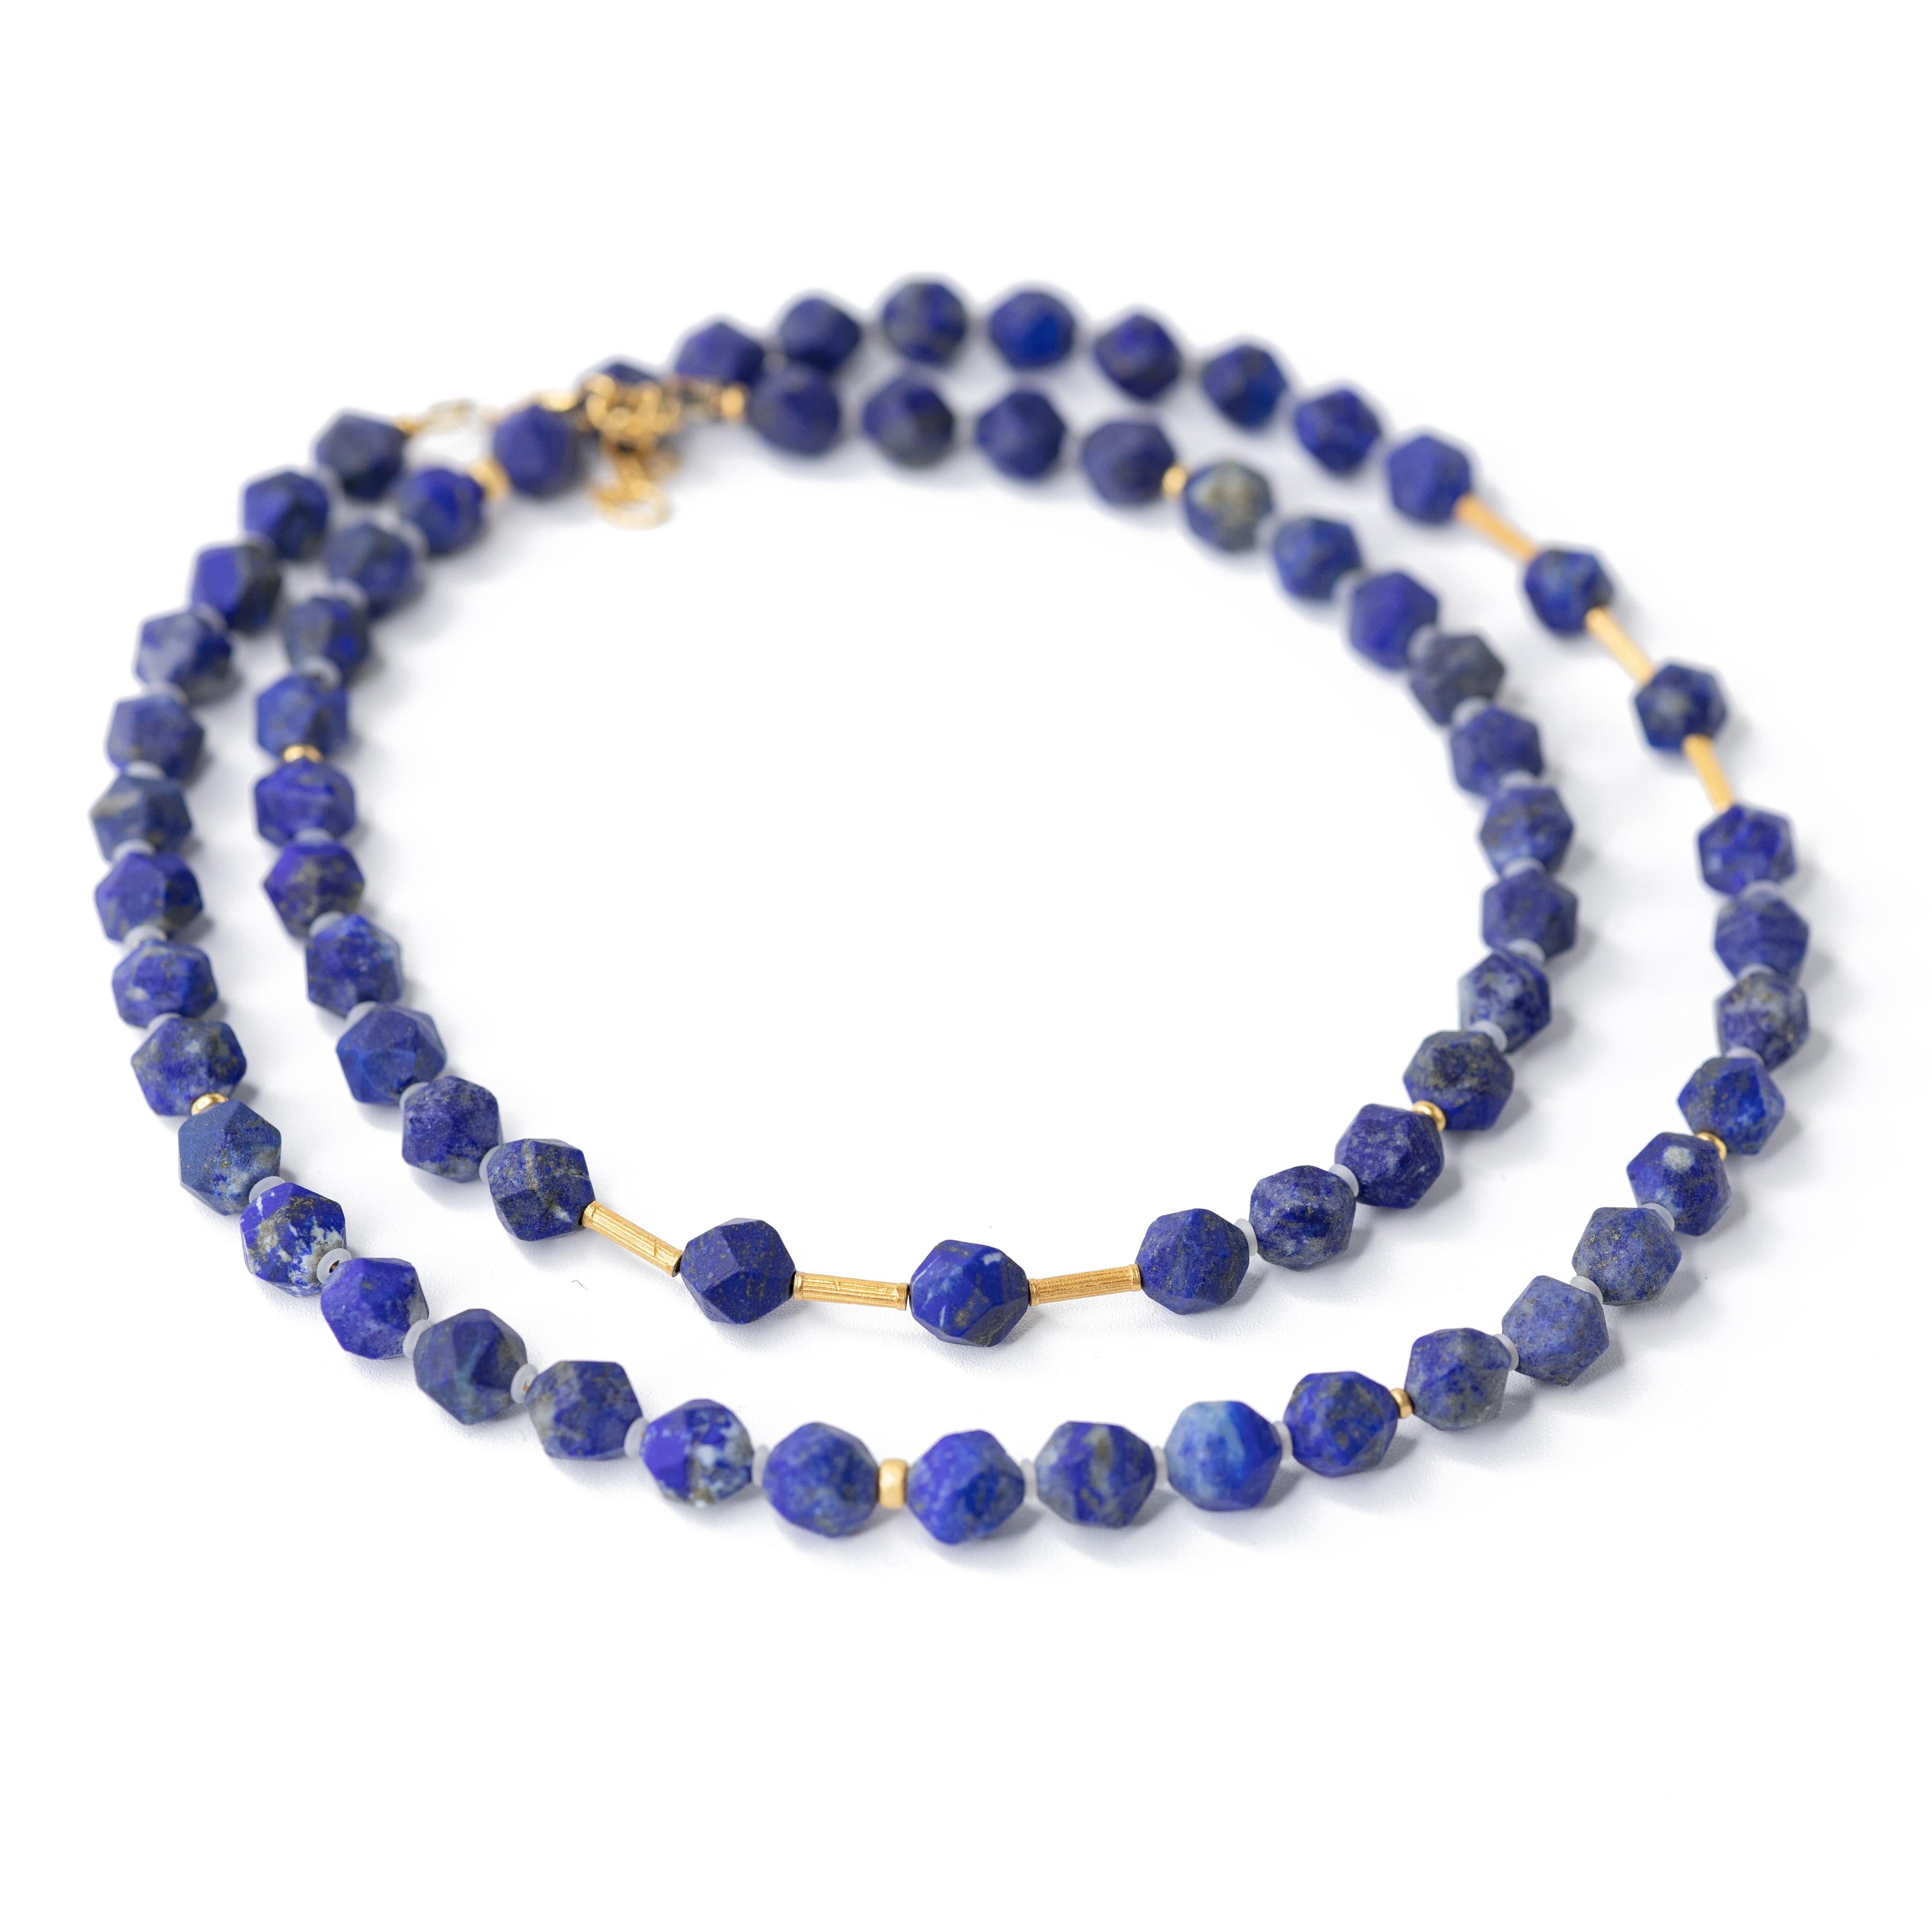 Women's Lapis Lazuli Necklace - Blue Madrid Lapis Necklace by Bombyx House For Sale